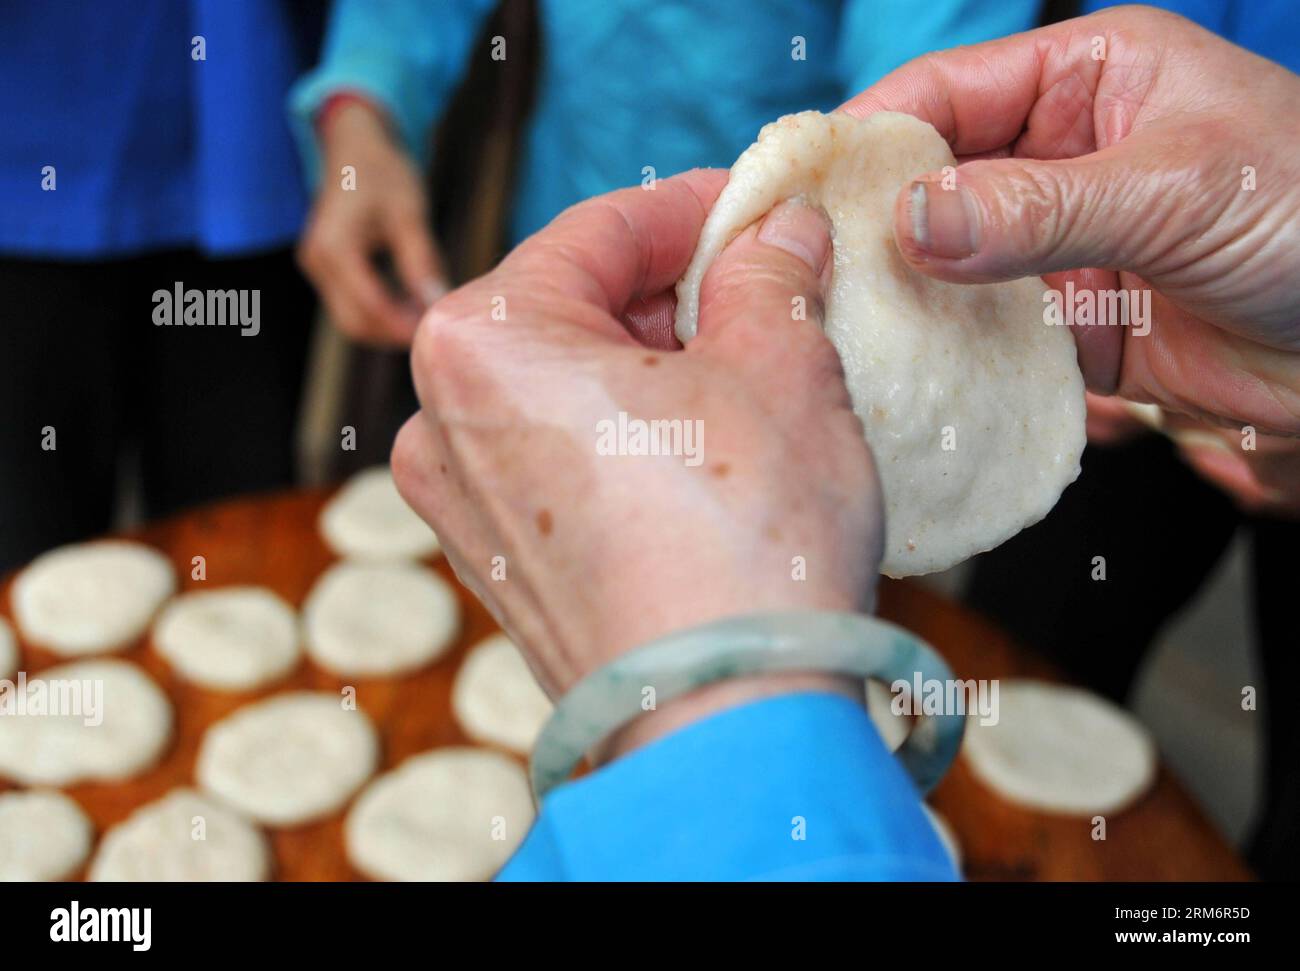 (140126) -- FUCHUAN, 26. Januar 2014 (Xinhua) -- Eine Frau aus der ethnischen Gruppe der Yao macht ciba, einen speziellen glutenfreien Reiskuchen, im Dorf Luoshan, Lianshan Township, Fuchuan Yao Autonomous County, südchinesische autonome Region Guangxi Zhuang, 26. Januar 2014. Die Yao-Leute in Fuchuan haben die Tradition, ciba für das Frühlingsfest und die Erntefeier zu machen. (Xinhua/Chen Zixia) (hdt) CHINA-FUCHUAN-CIBA (CN) PUBLICATIONxNOTxINxCHN Fuchuan Jan 26 2014 XINHUA eine Frau aus der ethnischen Gruppe der Yao macht Ciba zu einem besonderen klebrigen Reiskuchen im Dorf Township Fuchuan Yao Autonomous County South China S Guangx Stockfoto